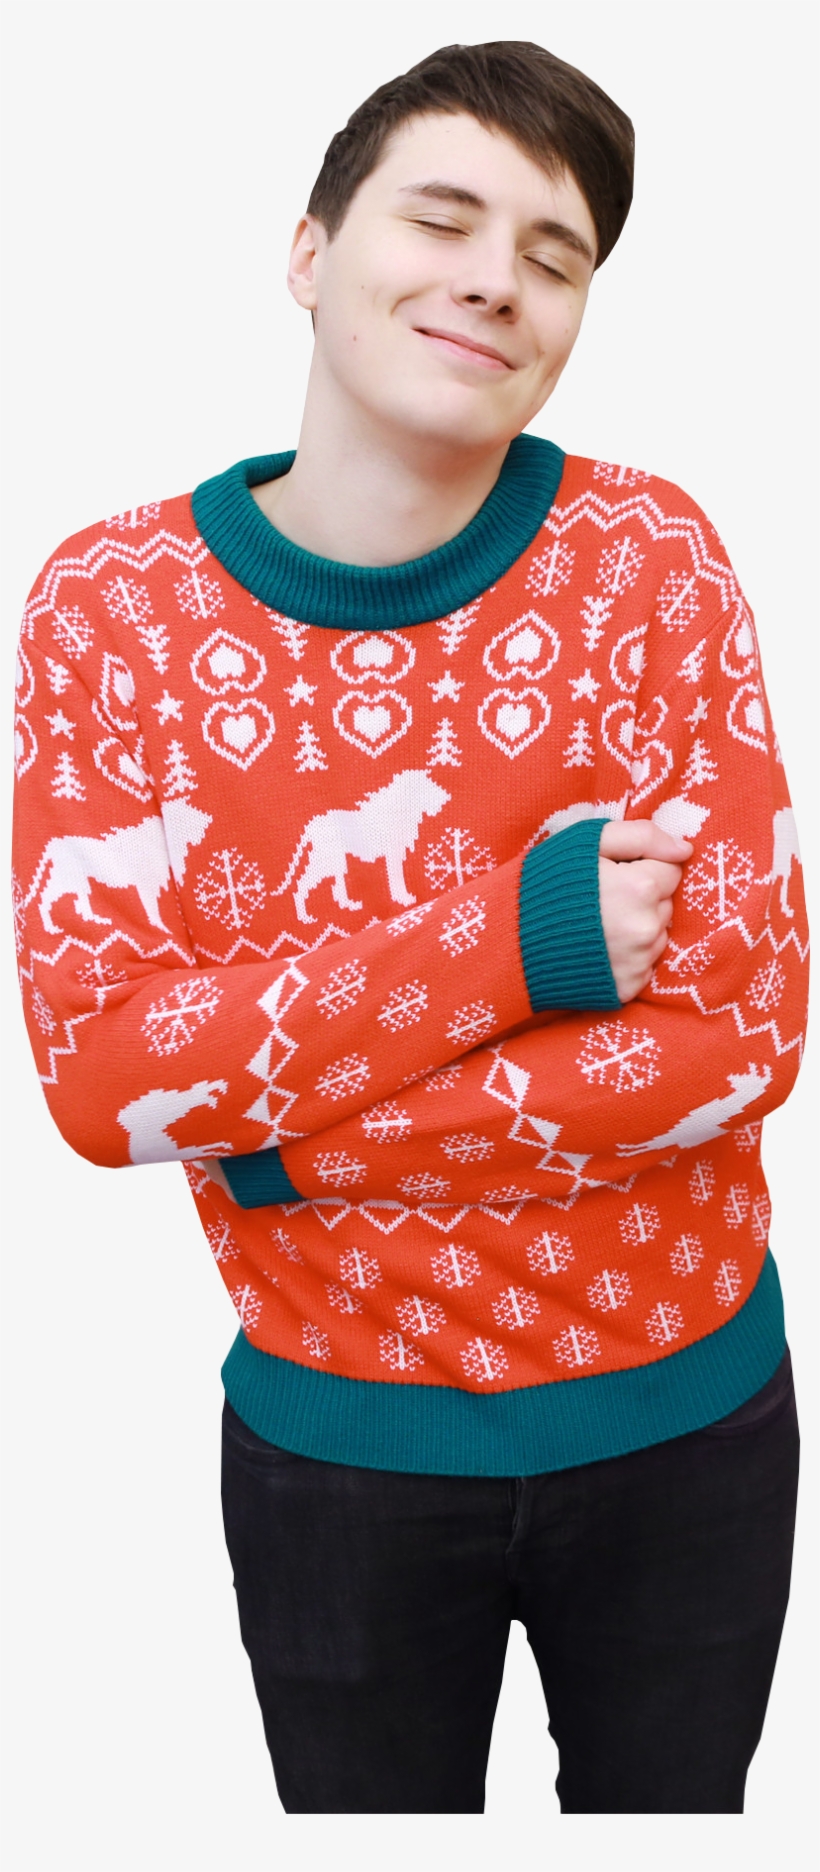 Dan And Phil Tumblr Icons Png Dan And Phil Tumblr Icons - Dan And Phil Christmas Sweater, transparent png #8441104